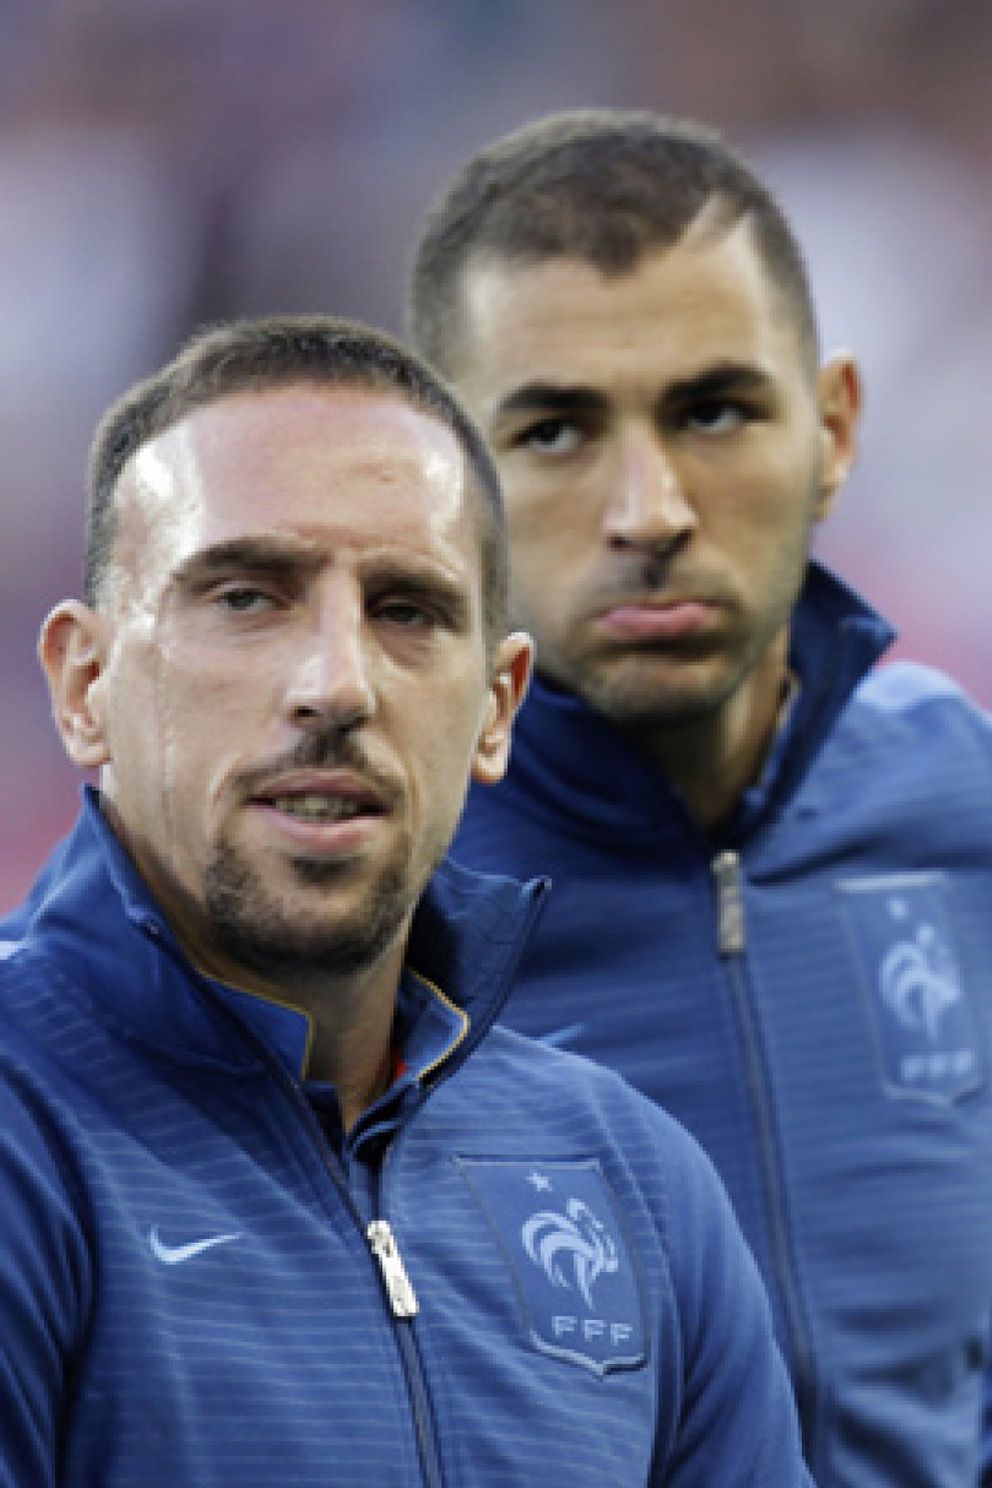 Foto: Benzema y Ribéry serán juzgados por prostitución de menores en junio